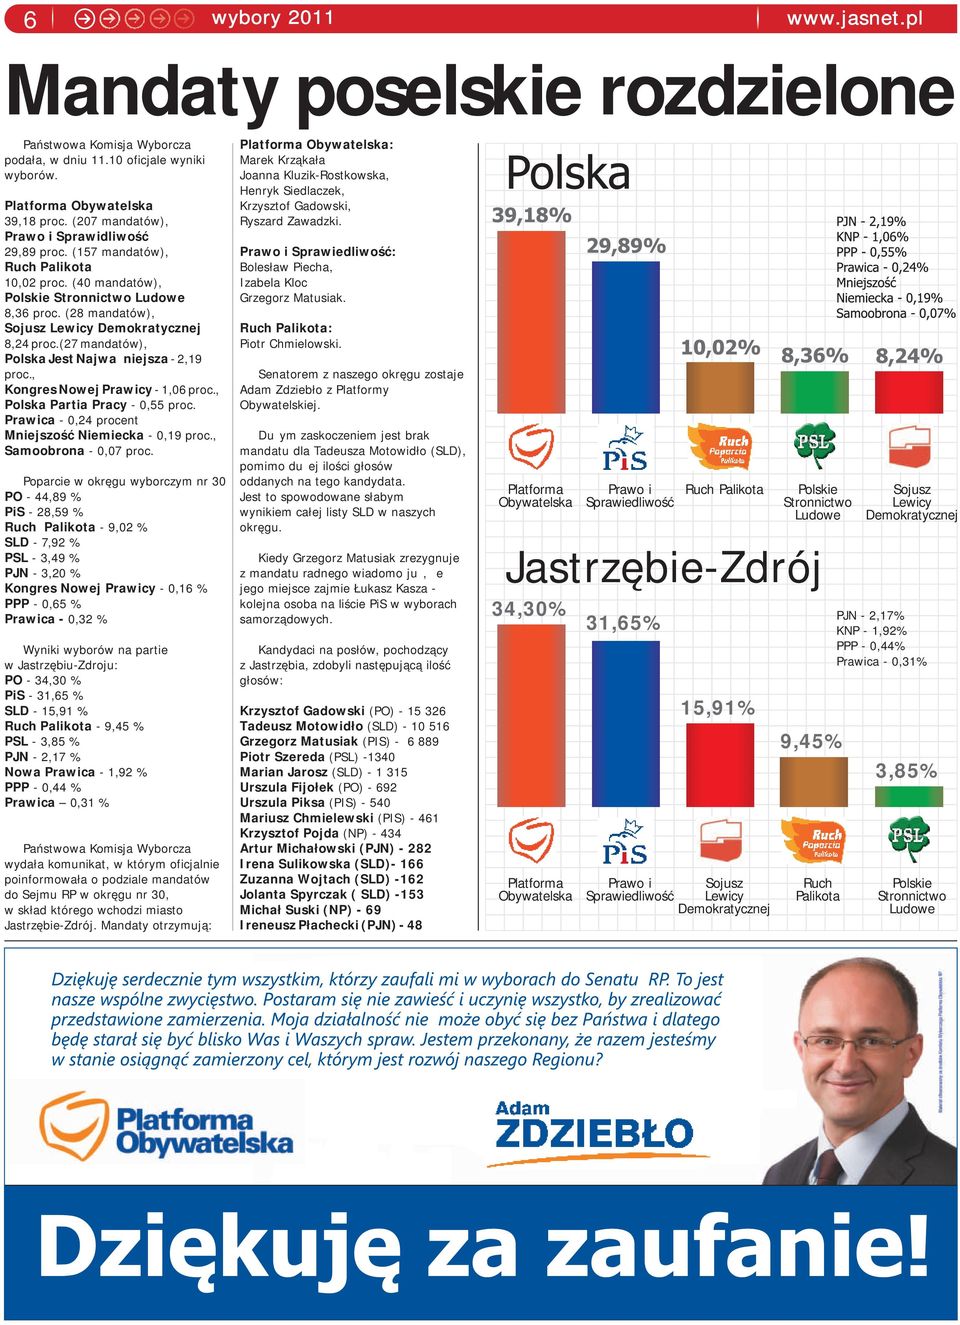 (27 mandatów), Polska Jest Najważniejsza - 2,19 proc., Kongres Nowej Prawicy - 1,06 proc., Polska Partia Pracy - 0,55 proc. Prawica - 0,24 procent Mniejszość Niemiecka - 0,19 proc.